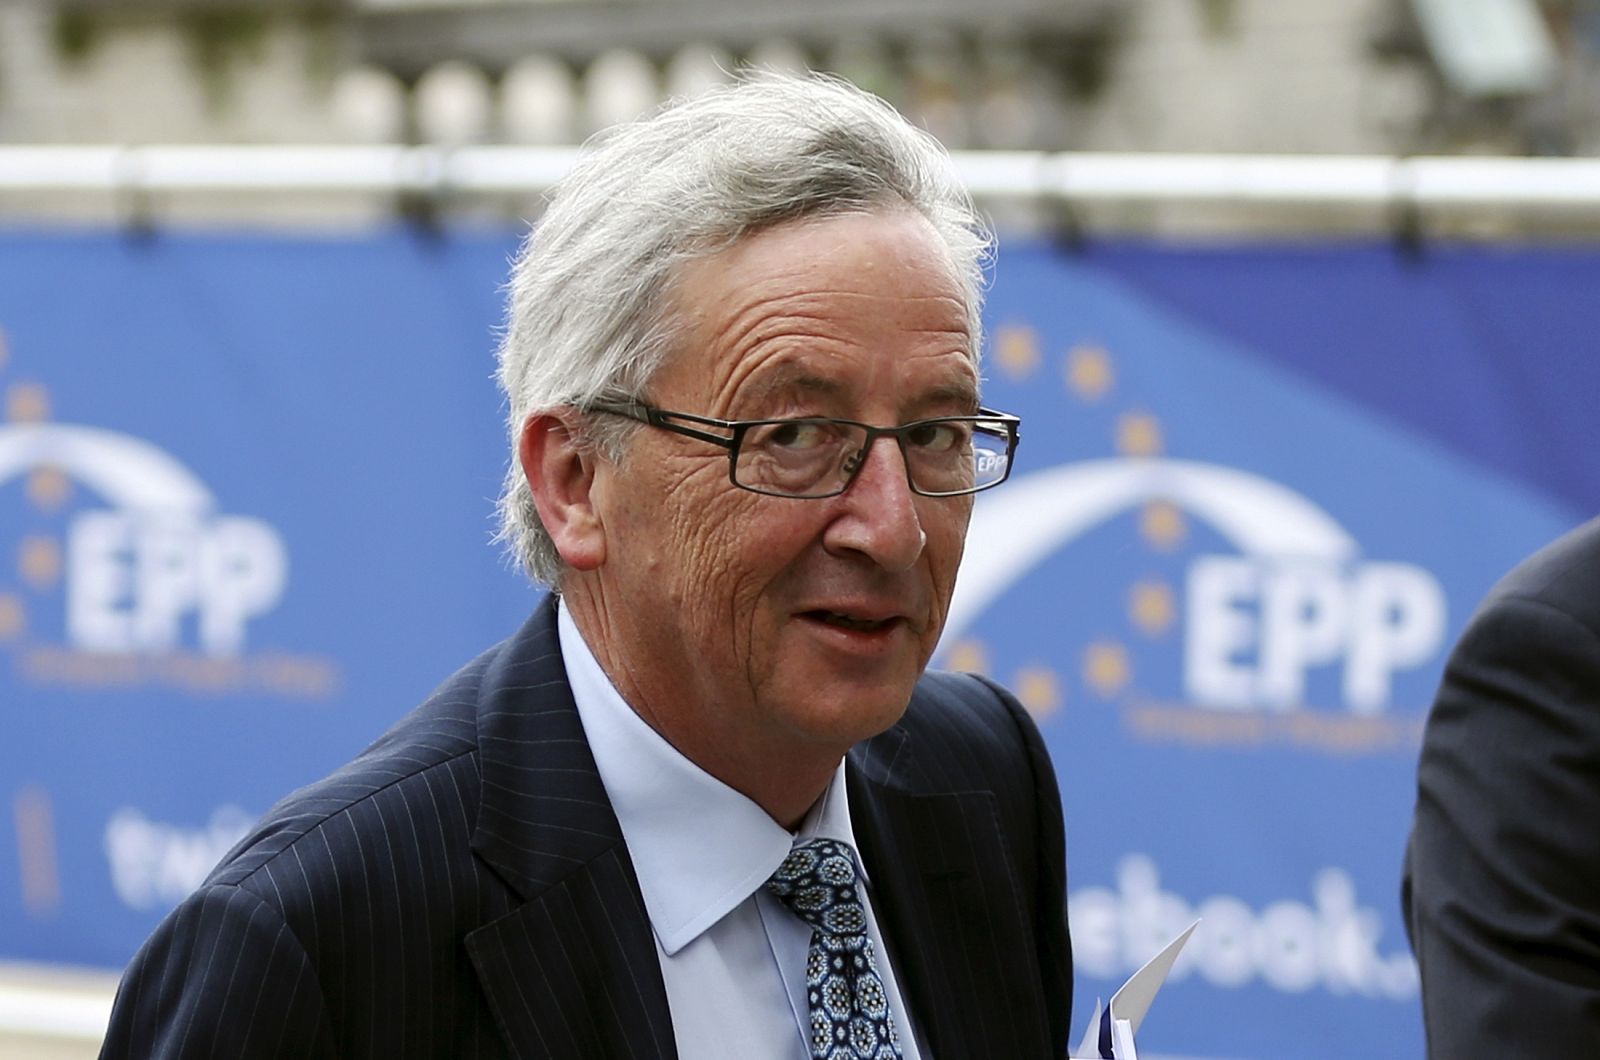 El candidato a presidir la Comisión Europea, Jean-Claude Juncker